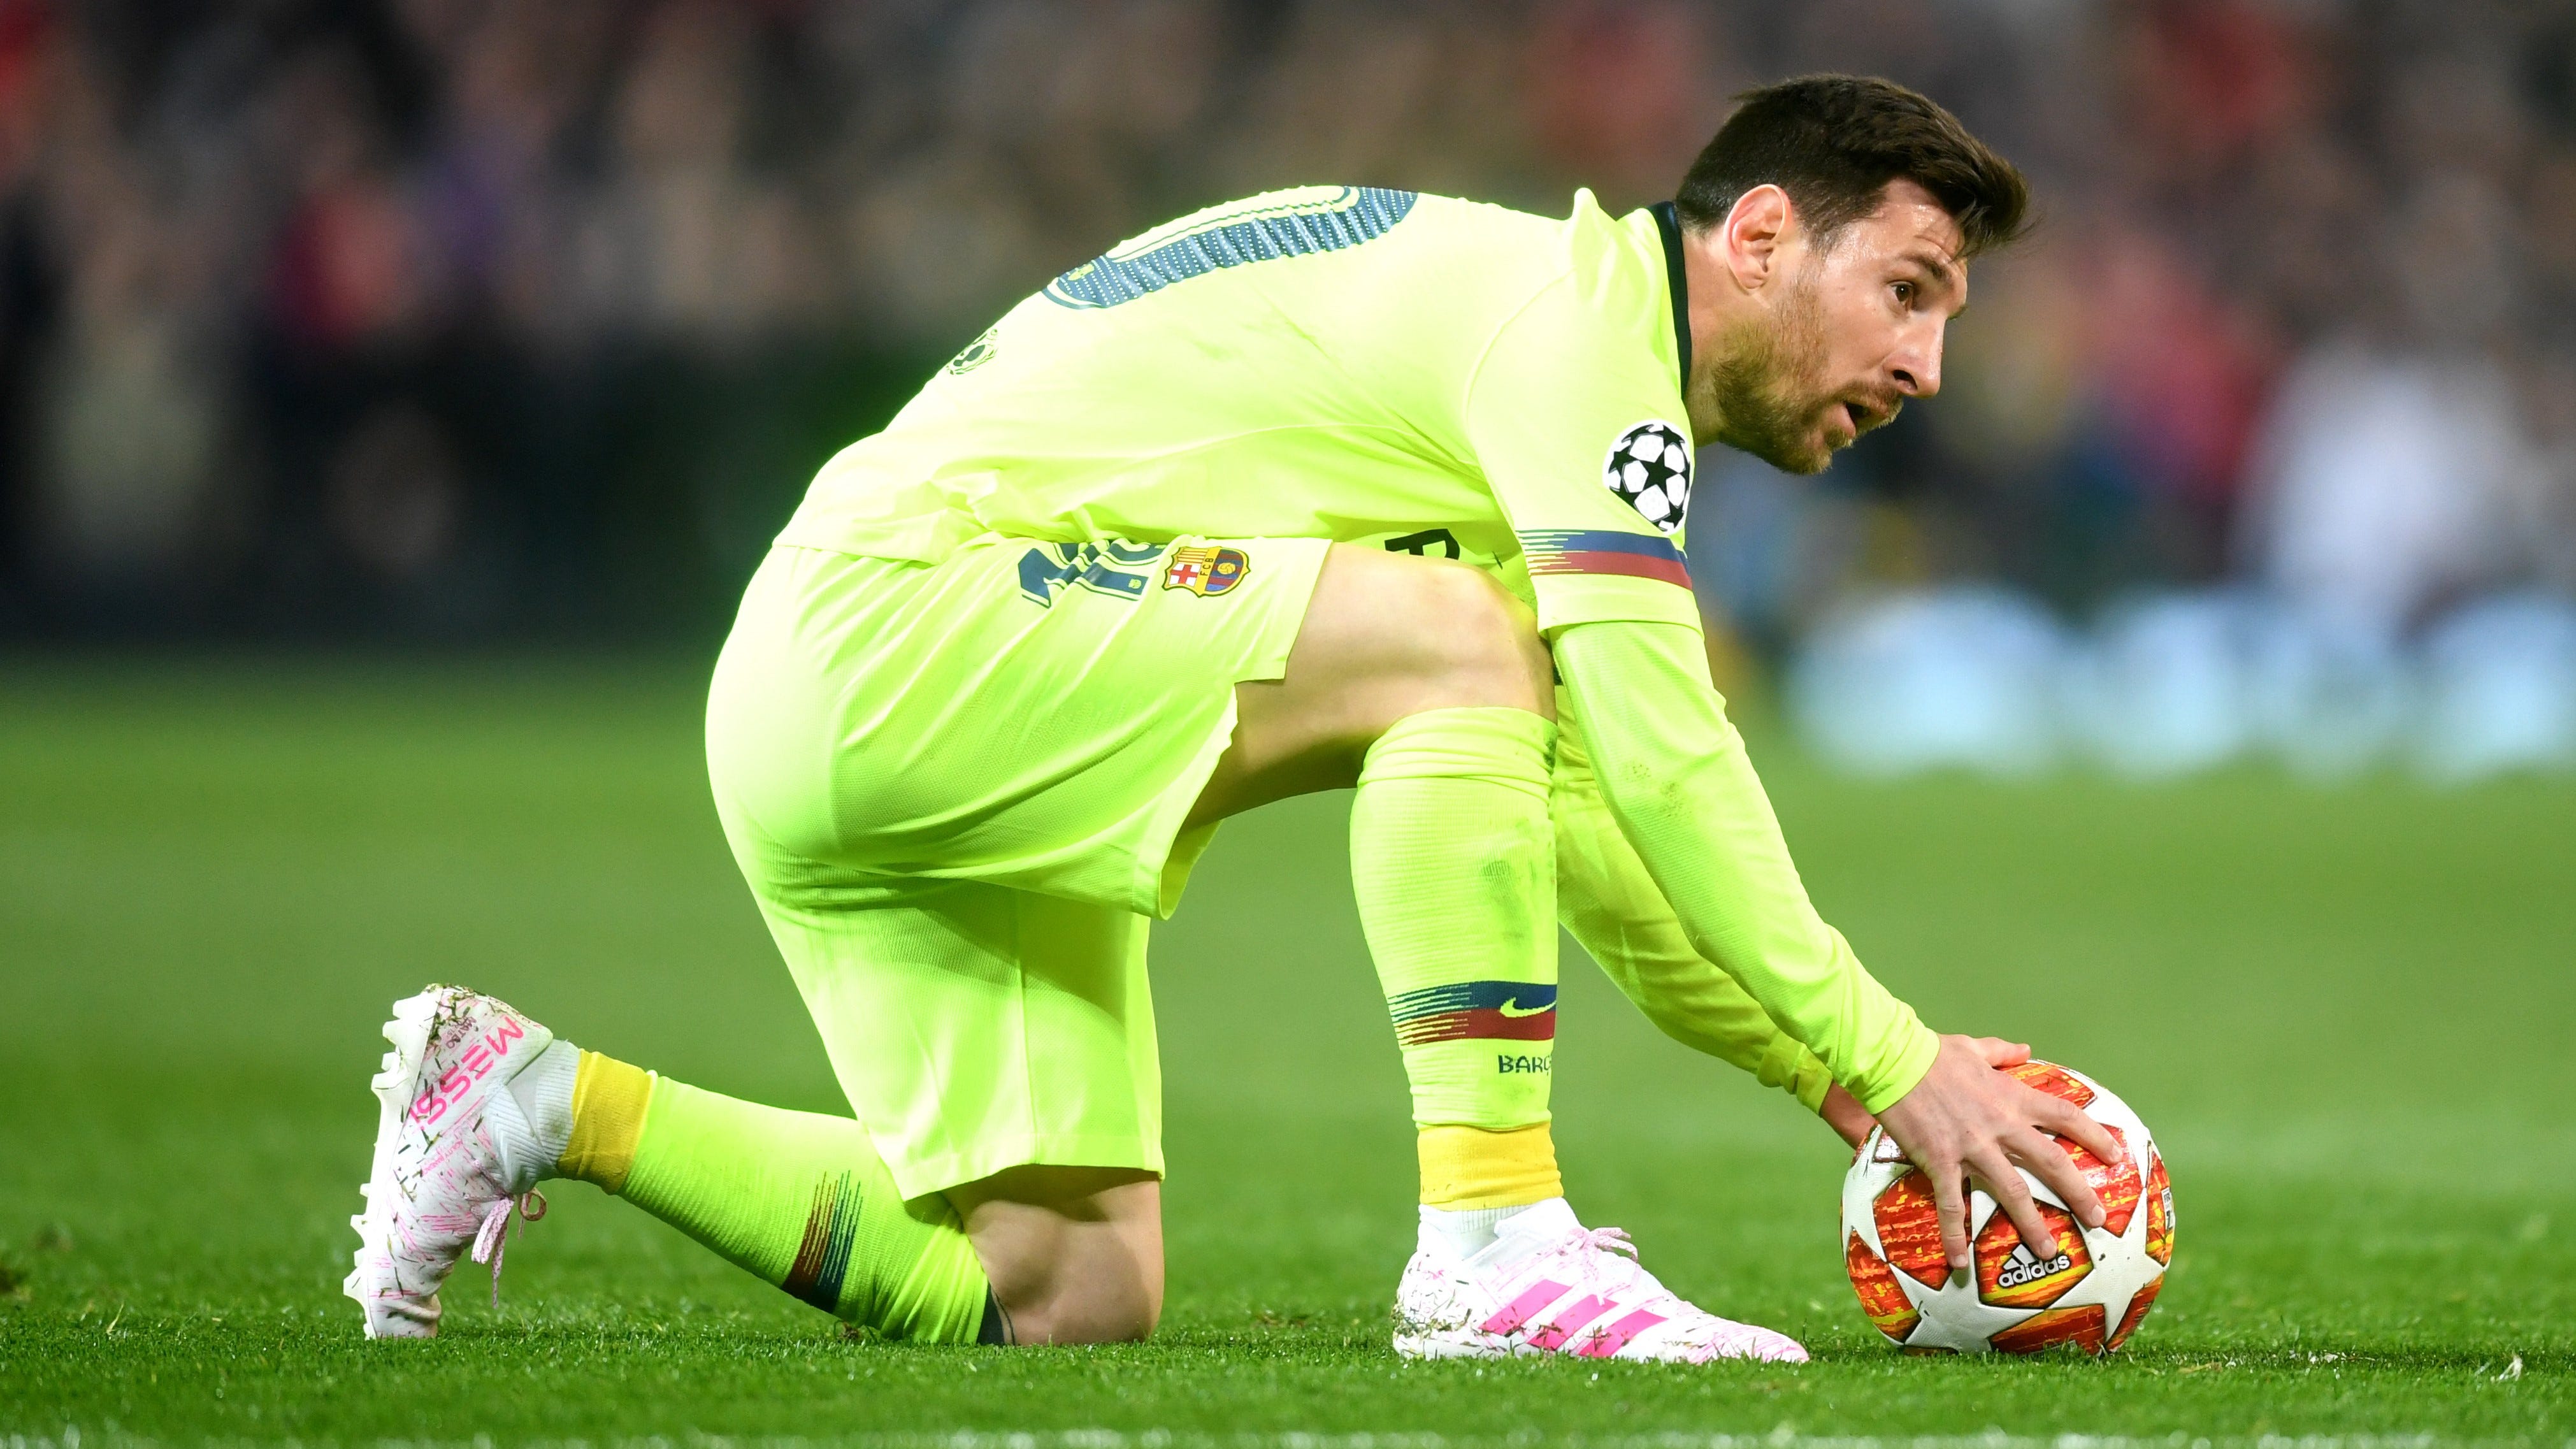 La efectividad de Lionel Messi en faltas: goles, remates y evolución |   Argentina